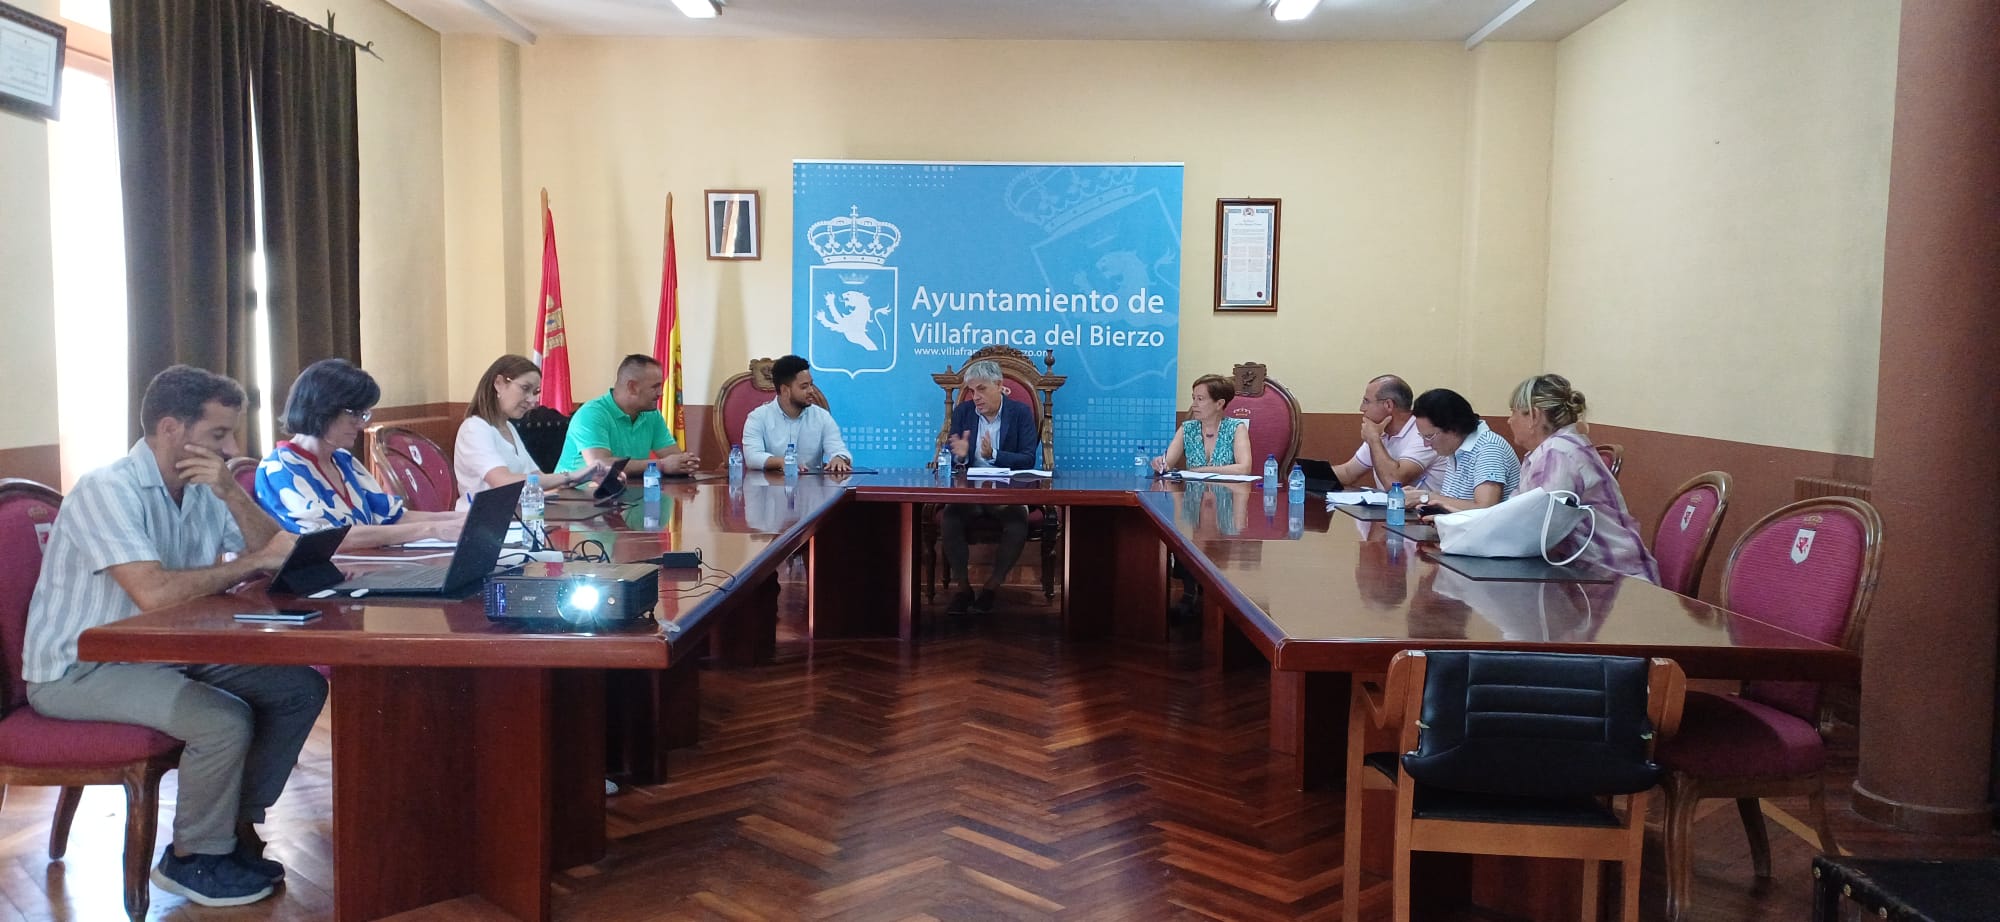 La Comisión Territorial de Patrimonio se reúne en Villafranca del Bierzo